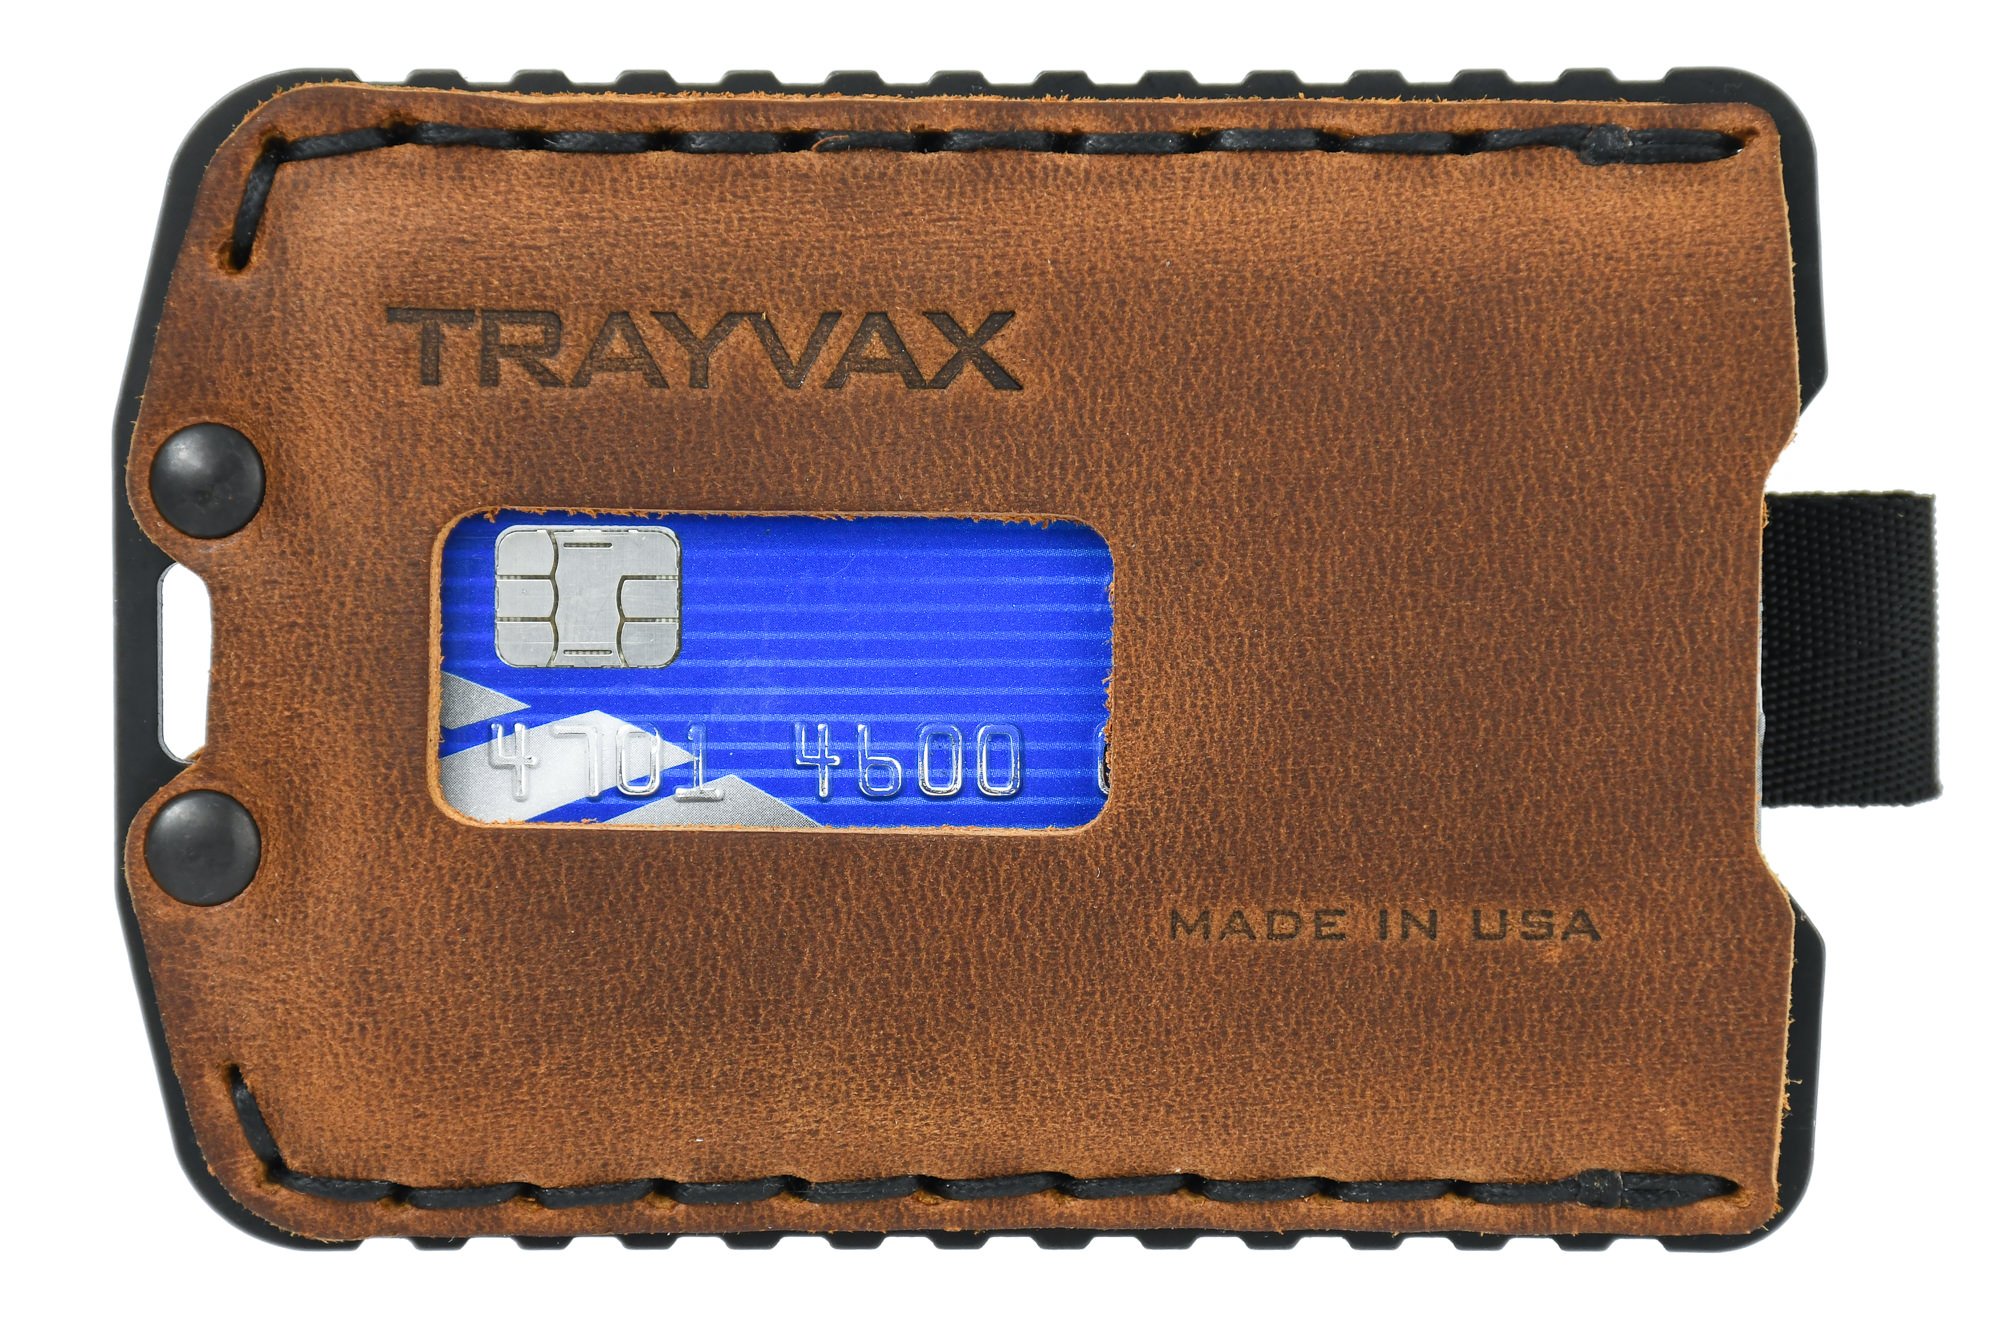 TrayvaxAxis Wallet